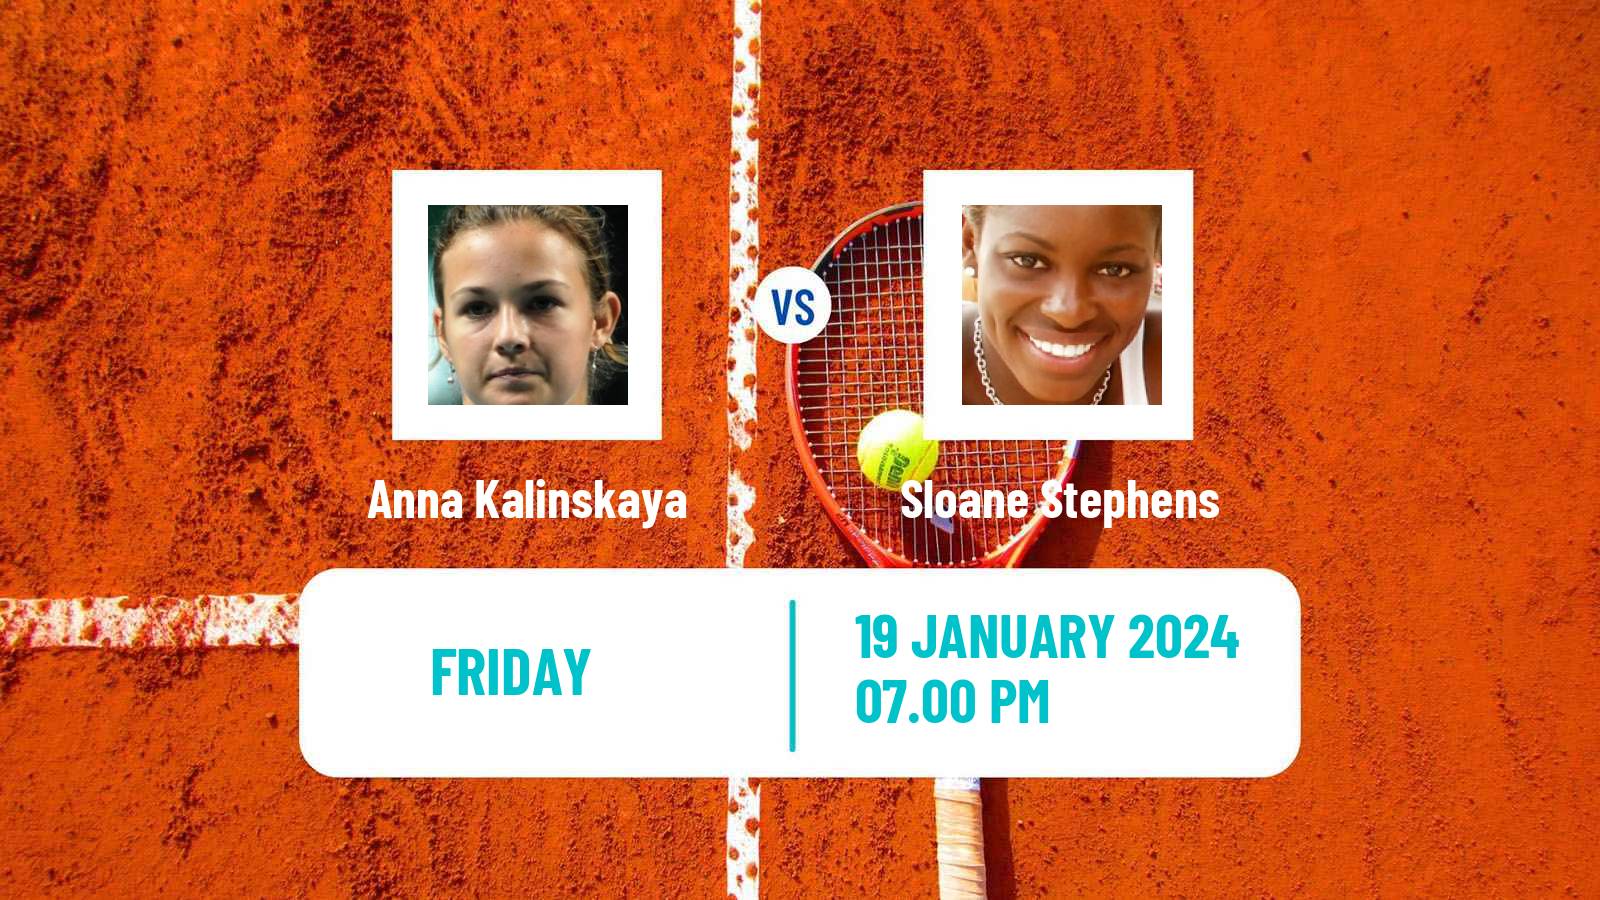 Tennis WTA Australian Open Anna Kalinskaya - Sloane Stephens